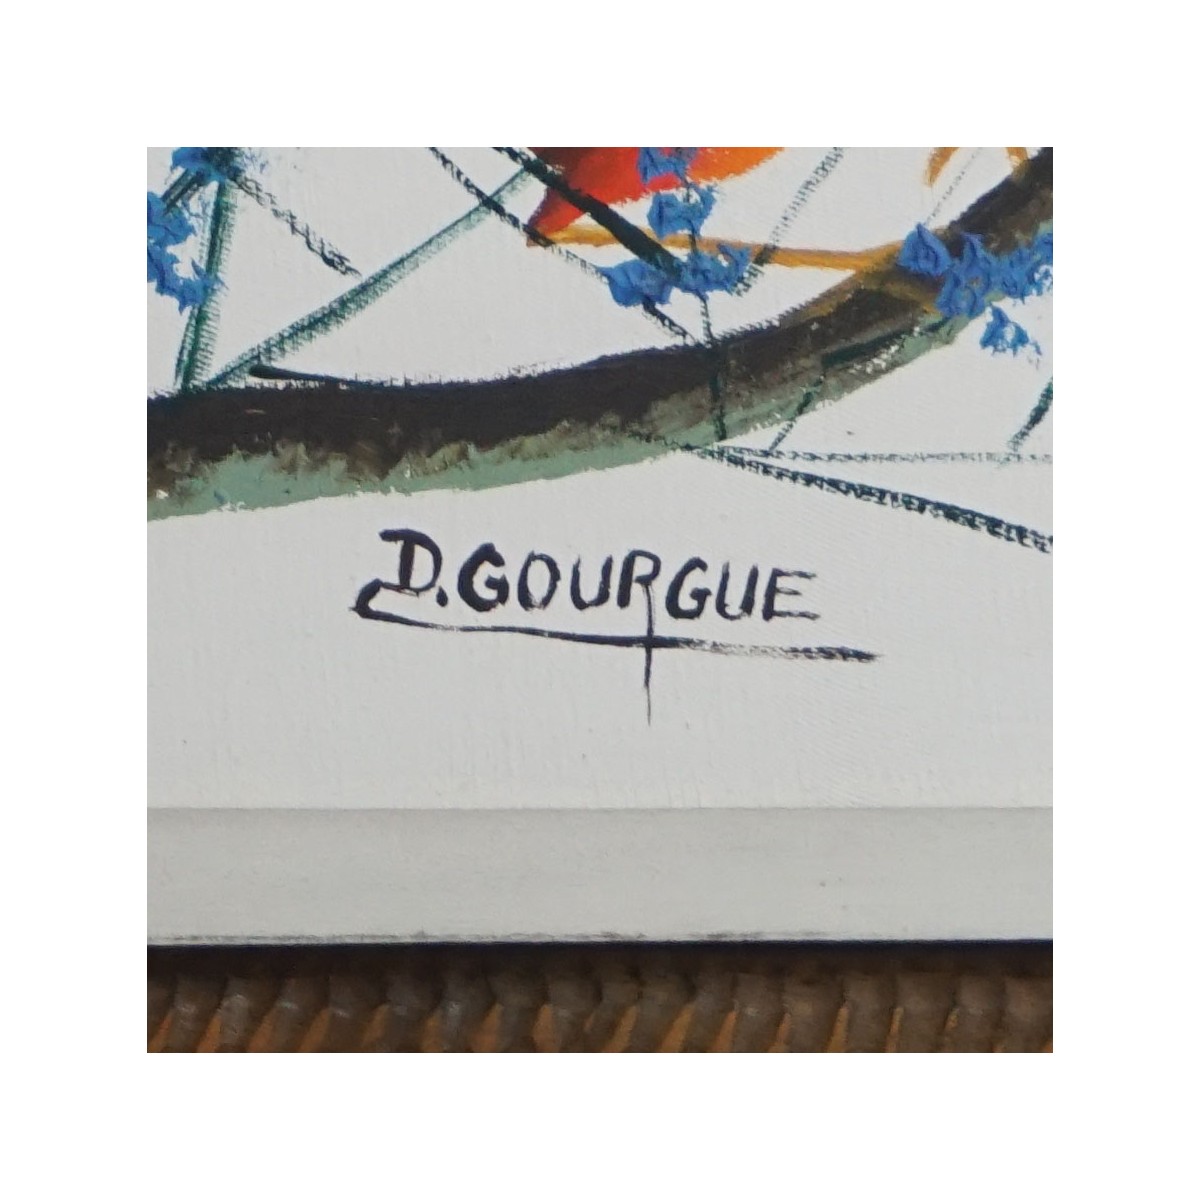 Decourcelle Gourgue, Haitian (b.1947)